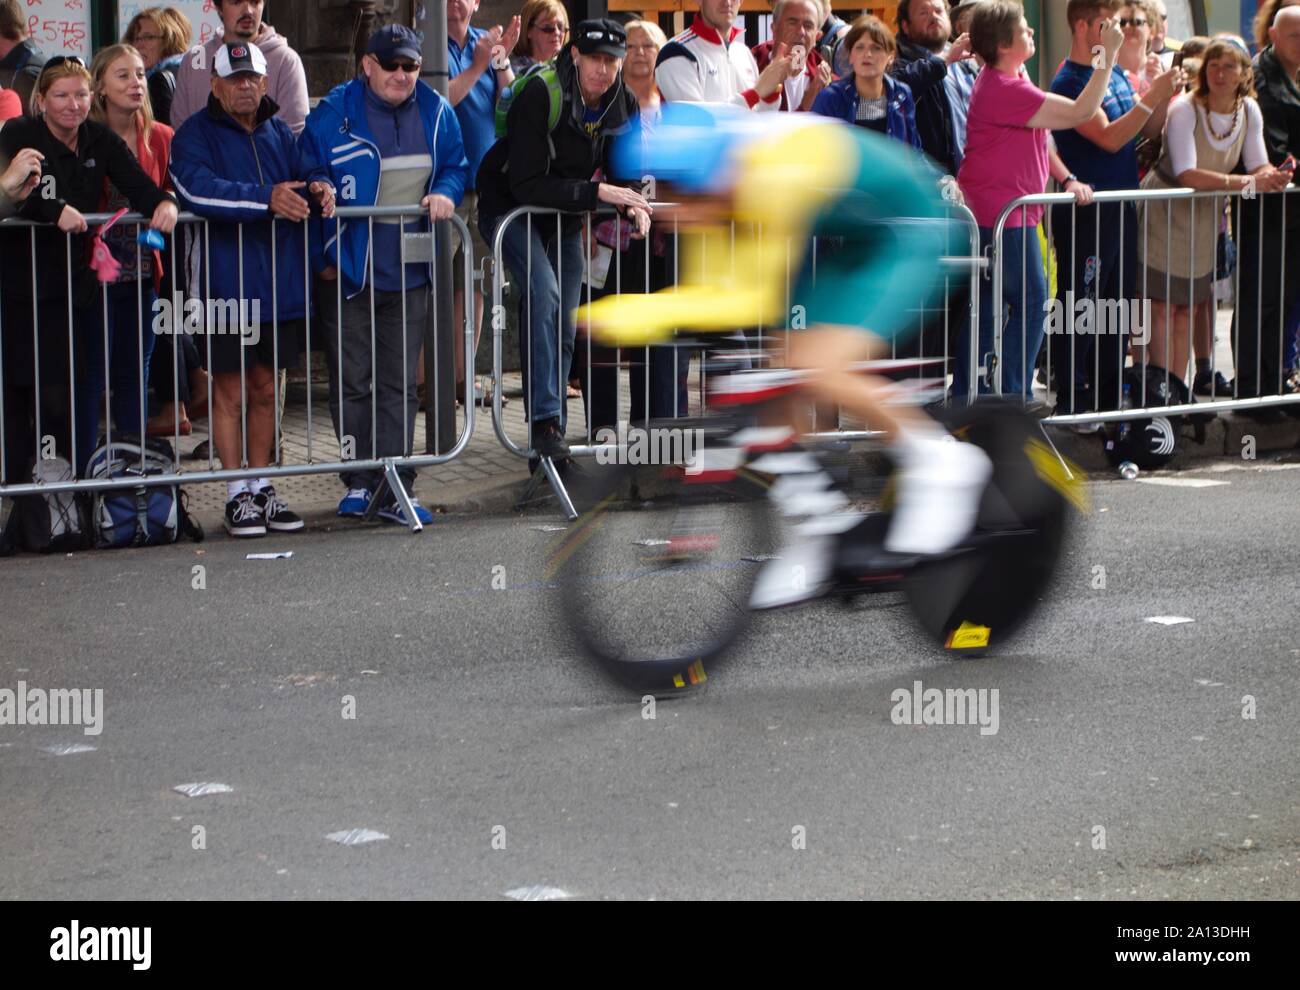 Sehr schneller Radfahrer in Bewegung, im Wettbewerb bei Glasgow Commonwealth Games Straßenrennen, 2014. Stockfoto